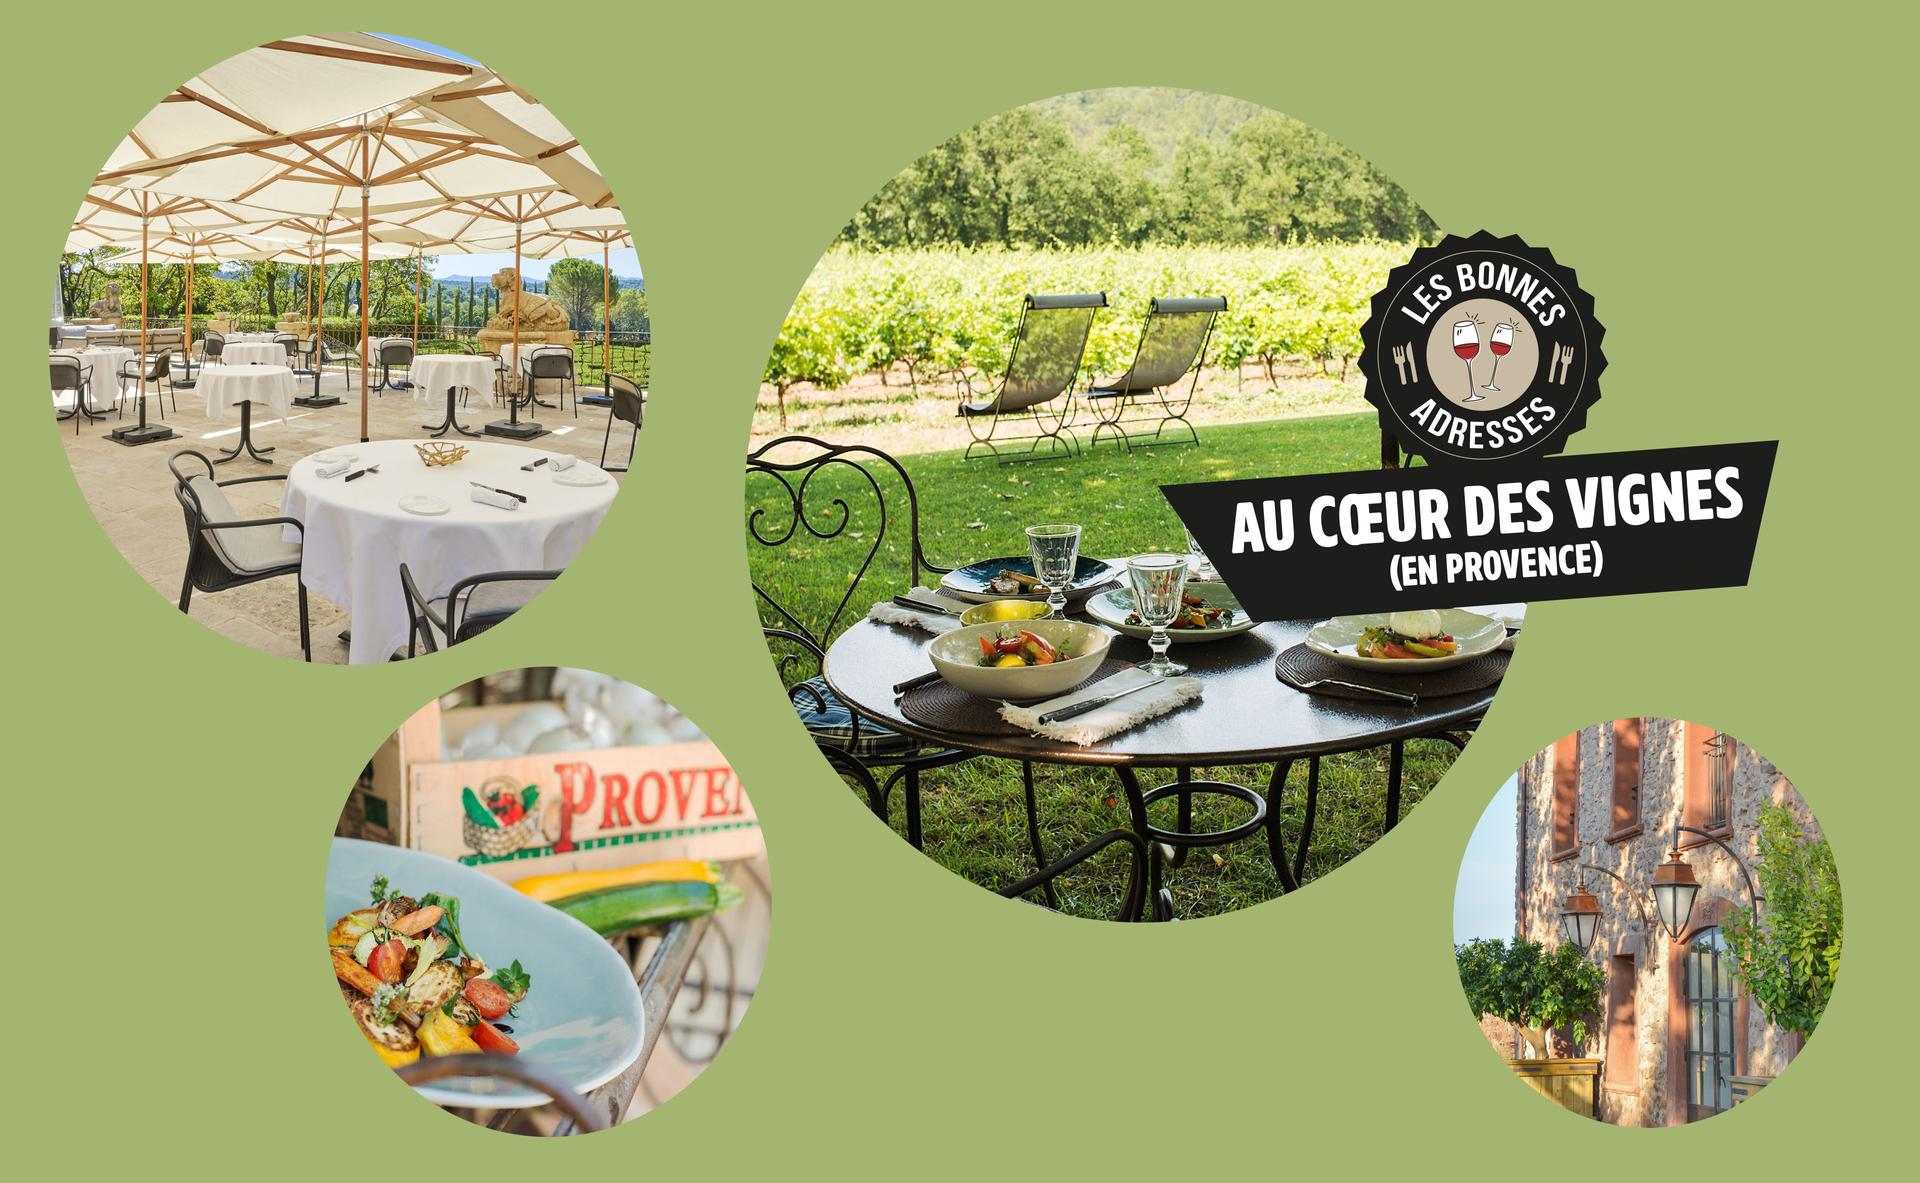 Vins et gastronomie : 3 tables incontournables au cœur des vignes de Provence